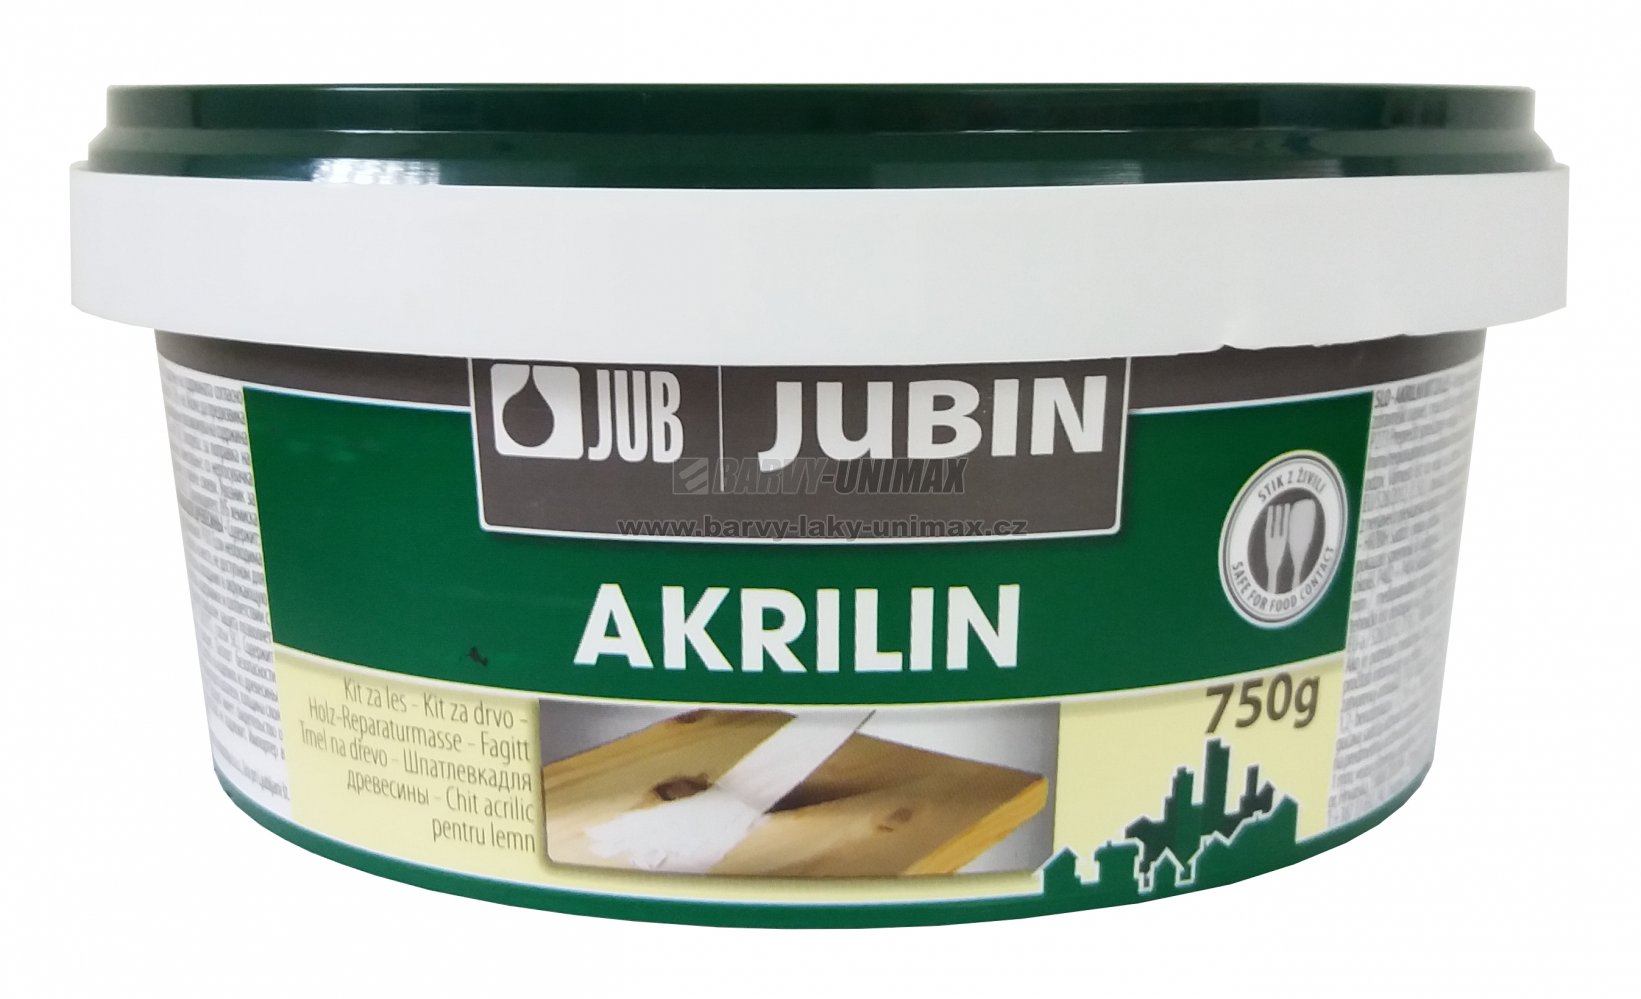 JUB JUBIN Akrilin Buk,150g